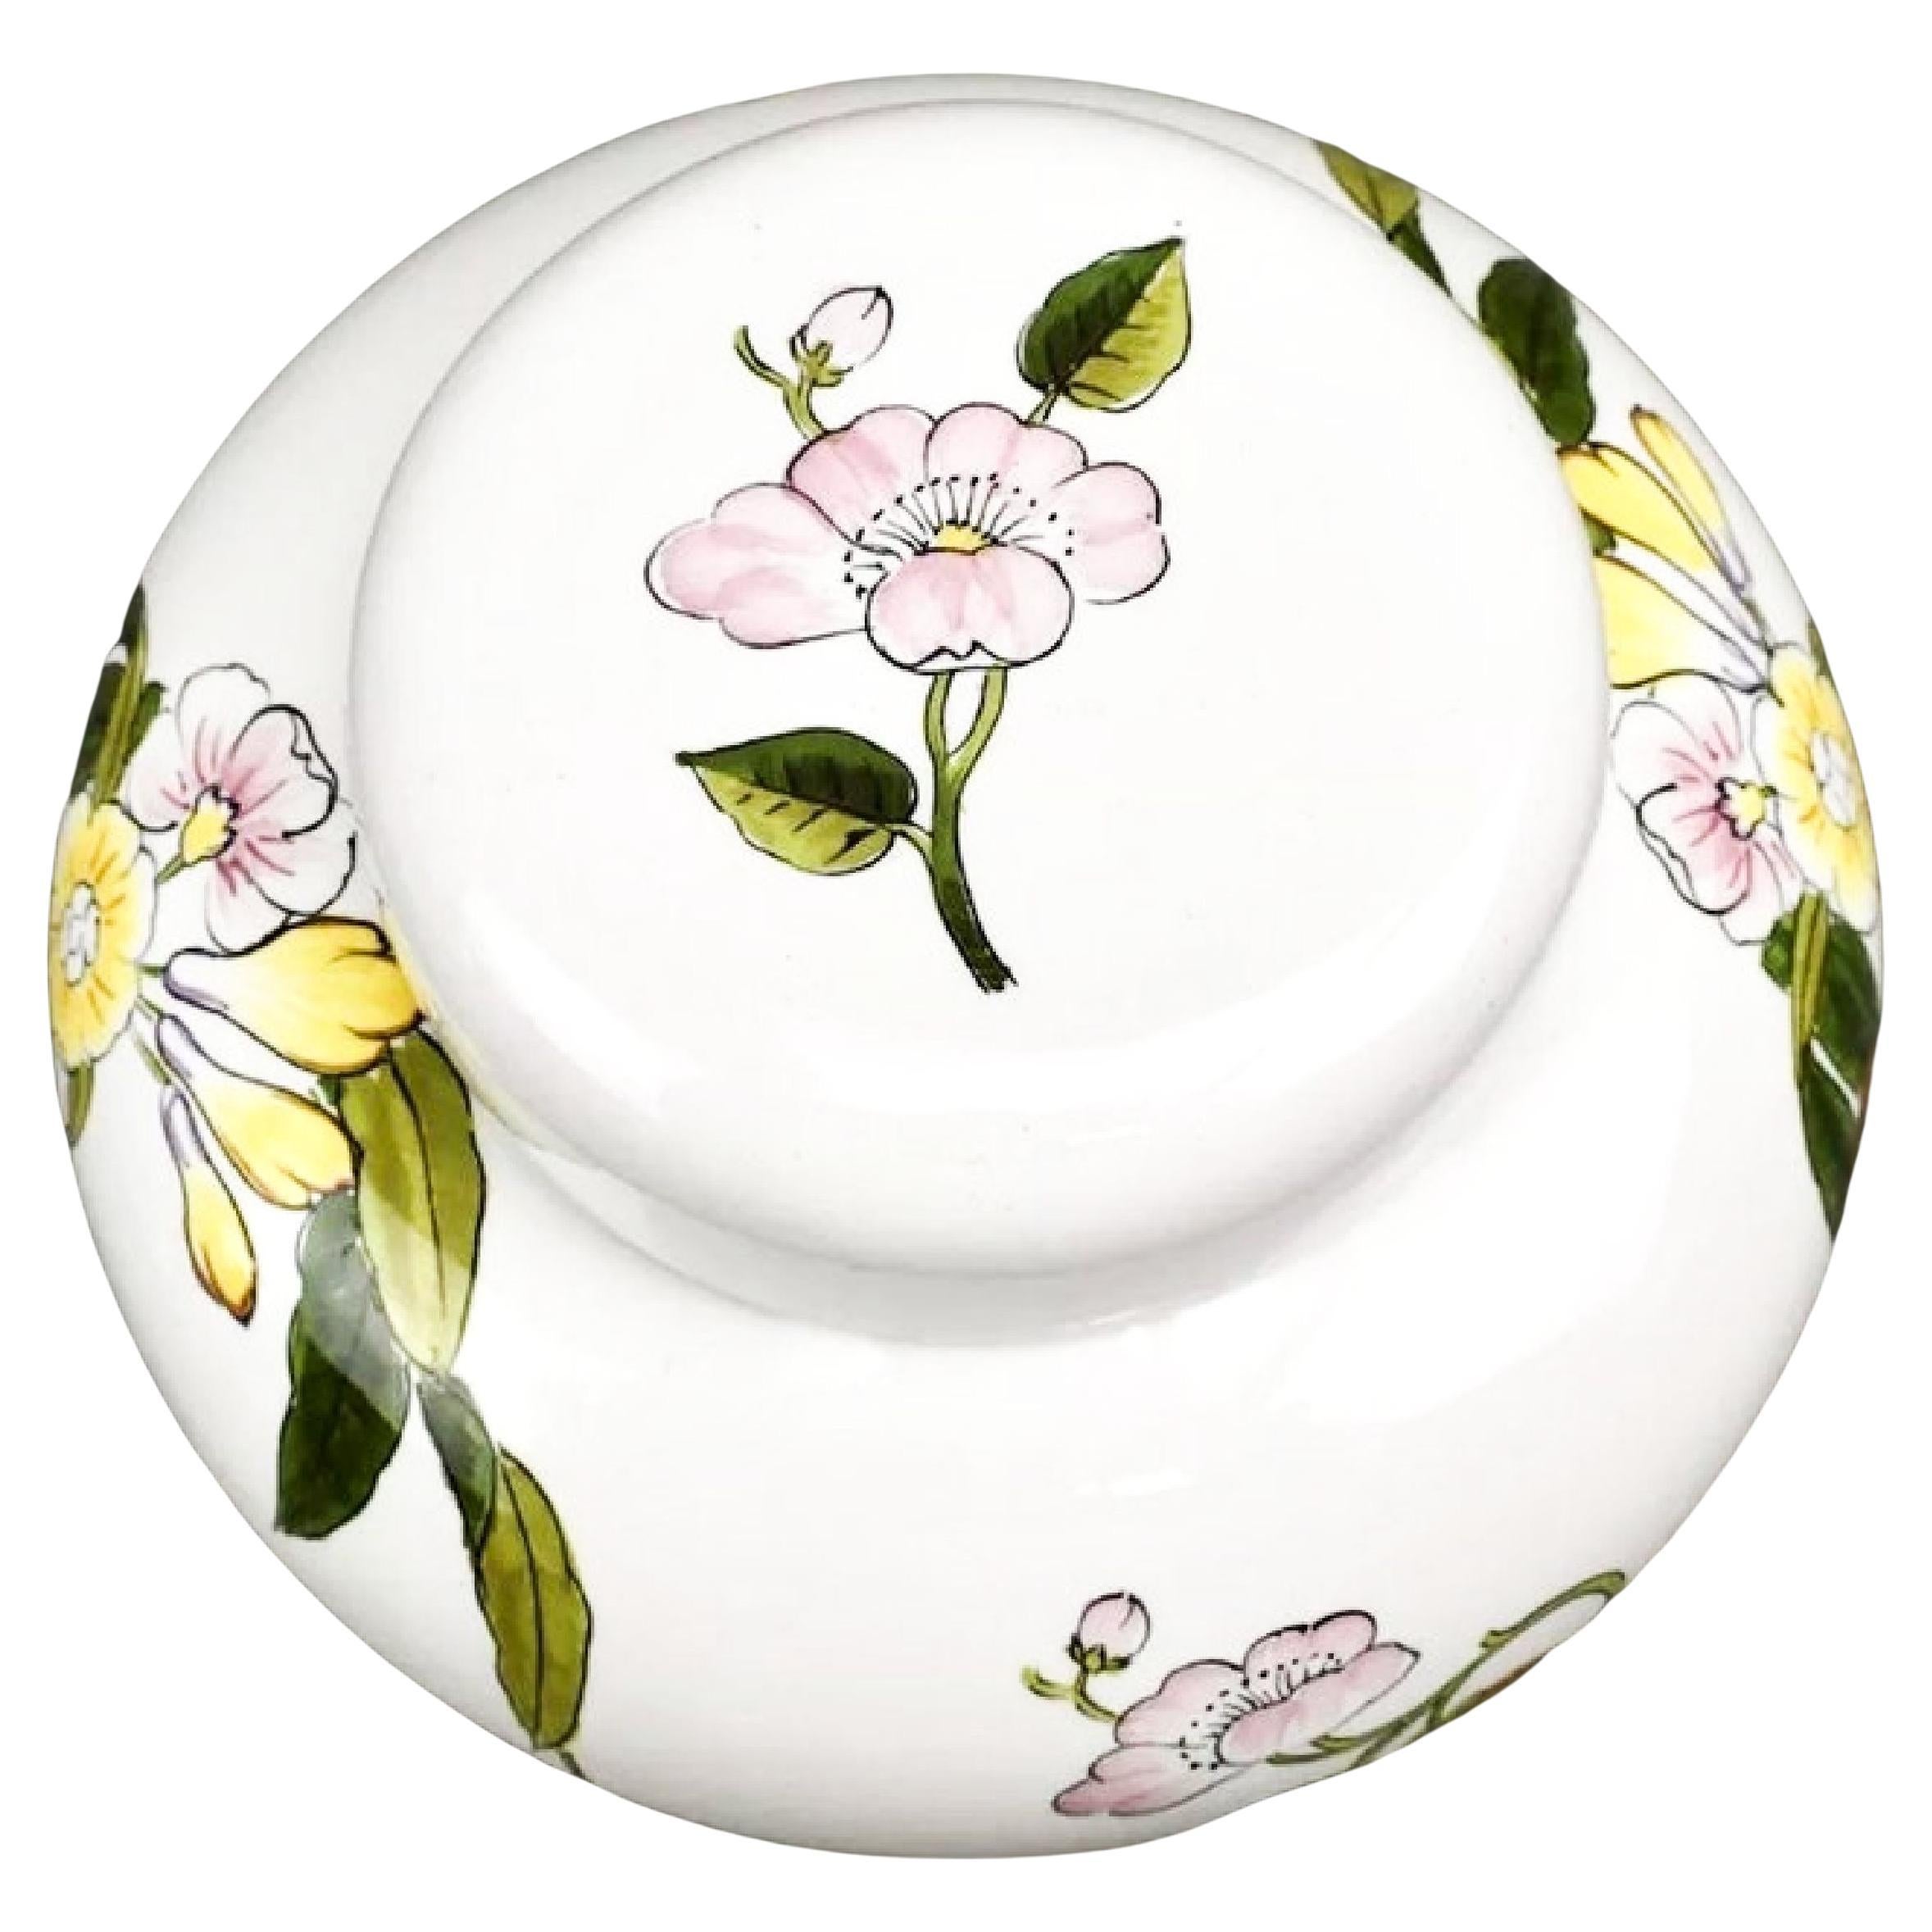 Este Ceramiche für Tiffany & Co. Handbemalte florale Porzellanvase mit Deckel, Urne oder vielleicht sogar eine Keksdose. Schönes, seltenes Stück. Die wunderschöne Platzierung der Blüten unterstreicht die blasenartige Form des Gefäßes. 